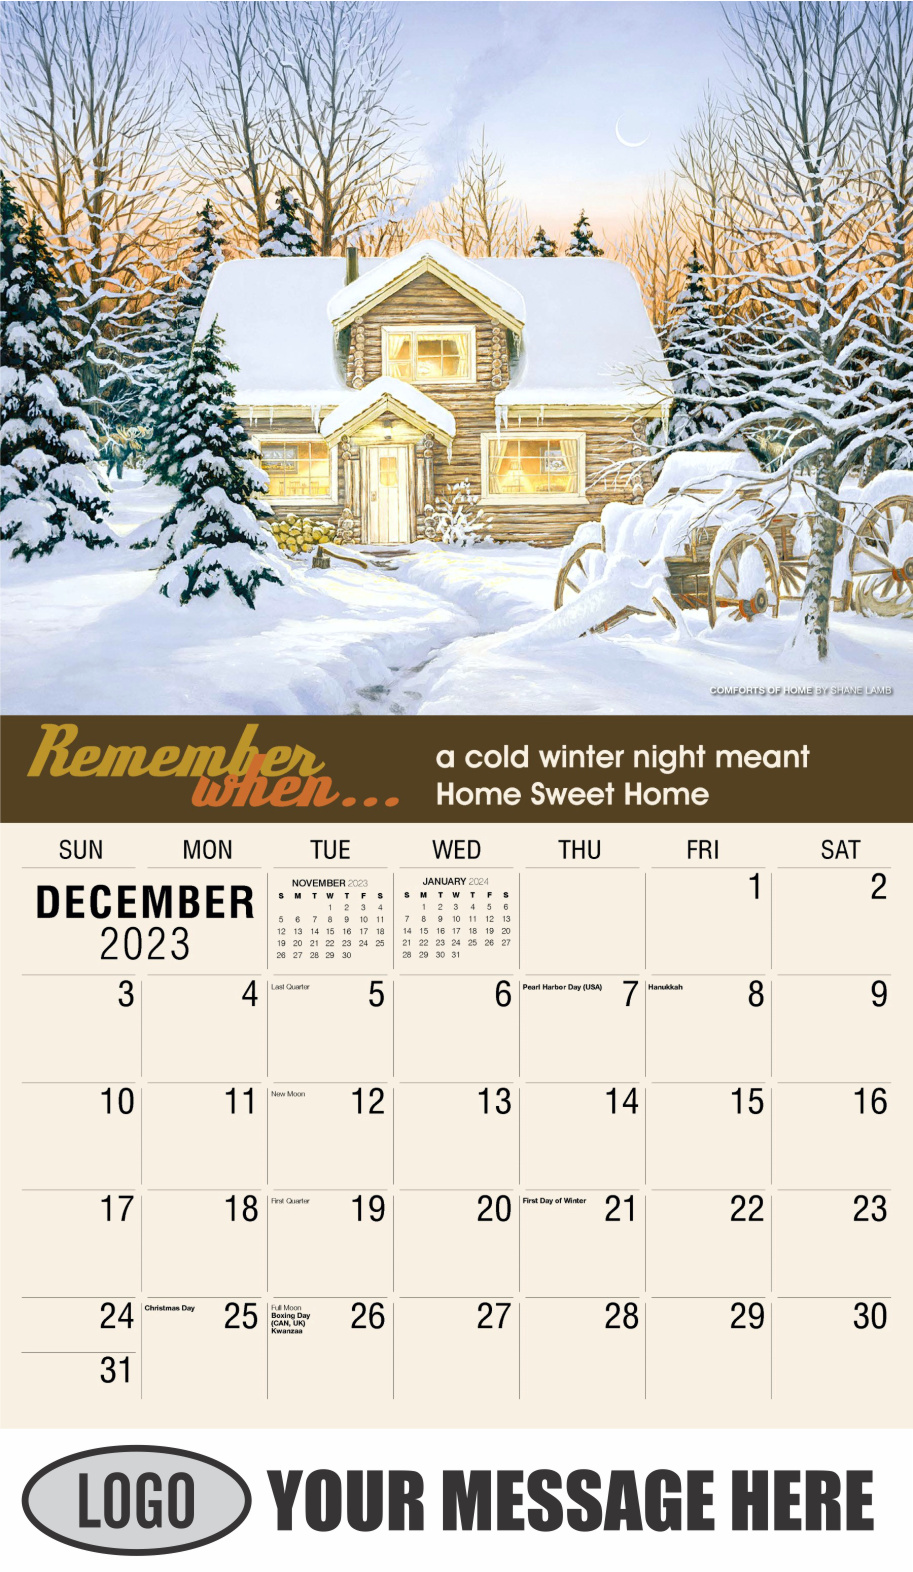 Remember When 2024 Business Advertising Calendar - December_a